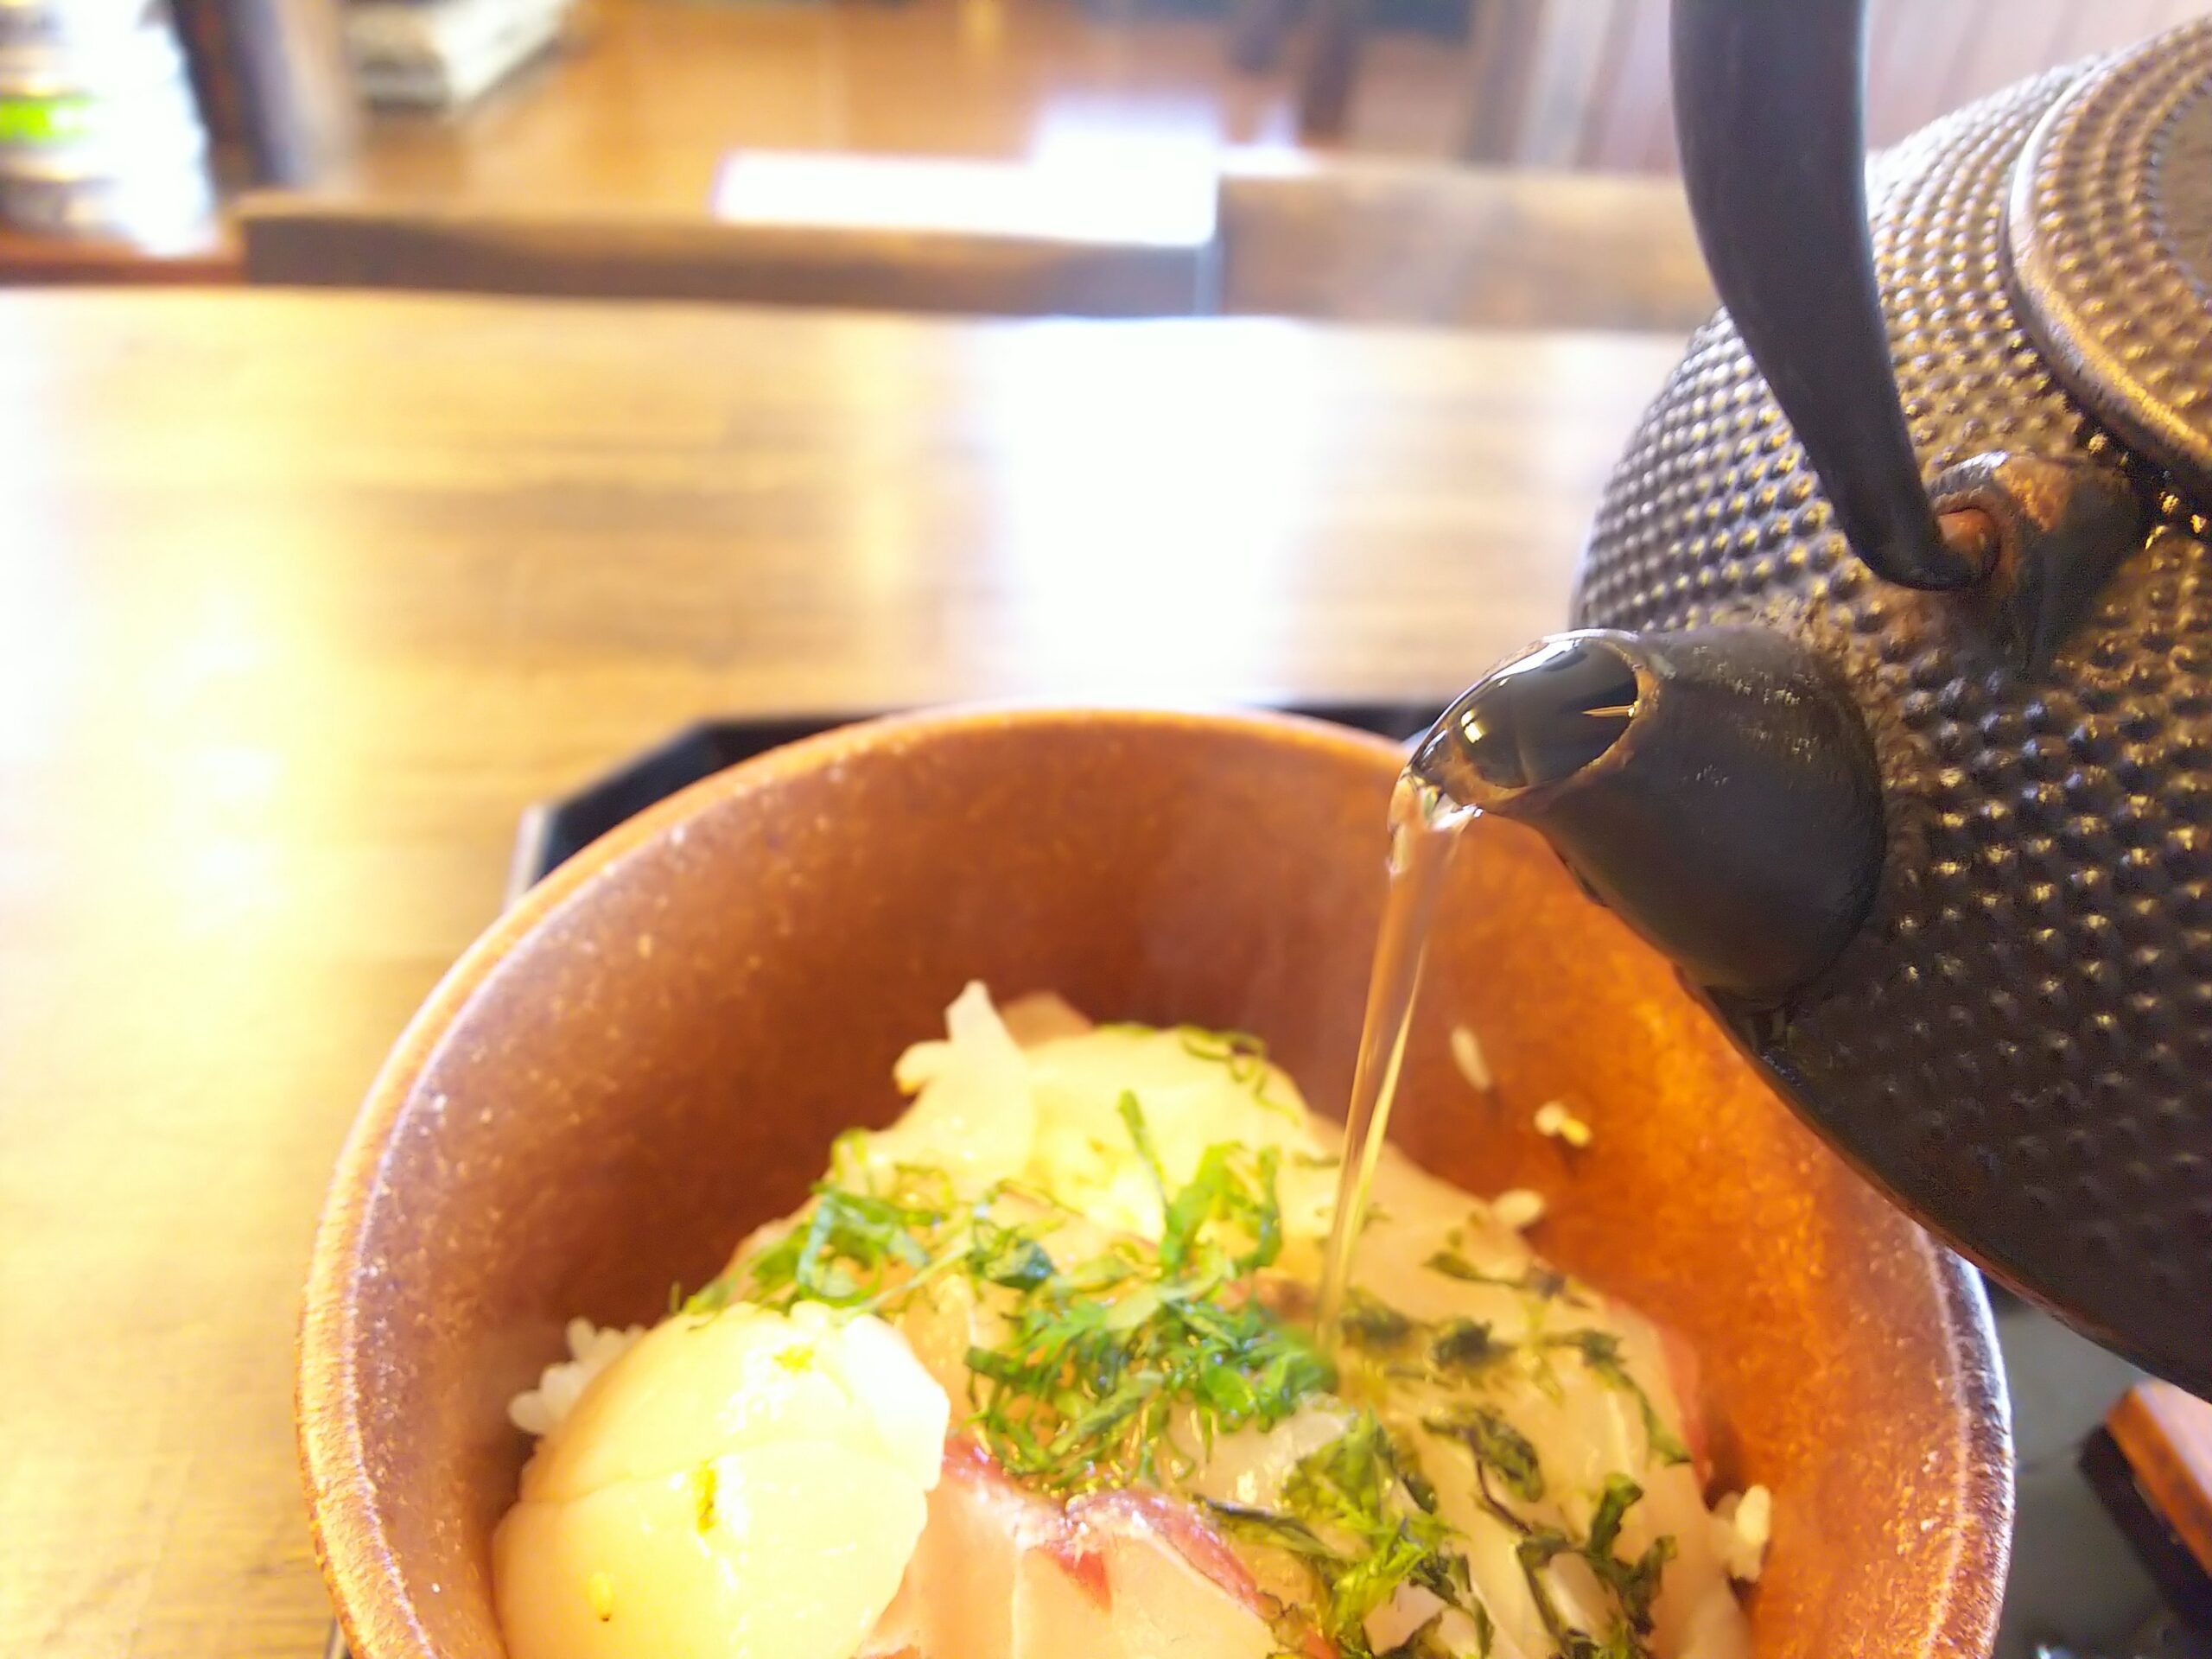 富士宮市 ゆうしお 富士山の麓富士宮で伊豆料理を味わう 今日はどこ行く 何食べる